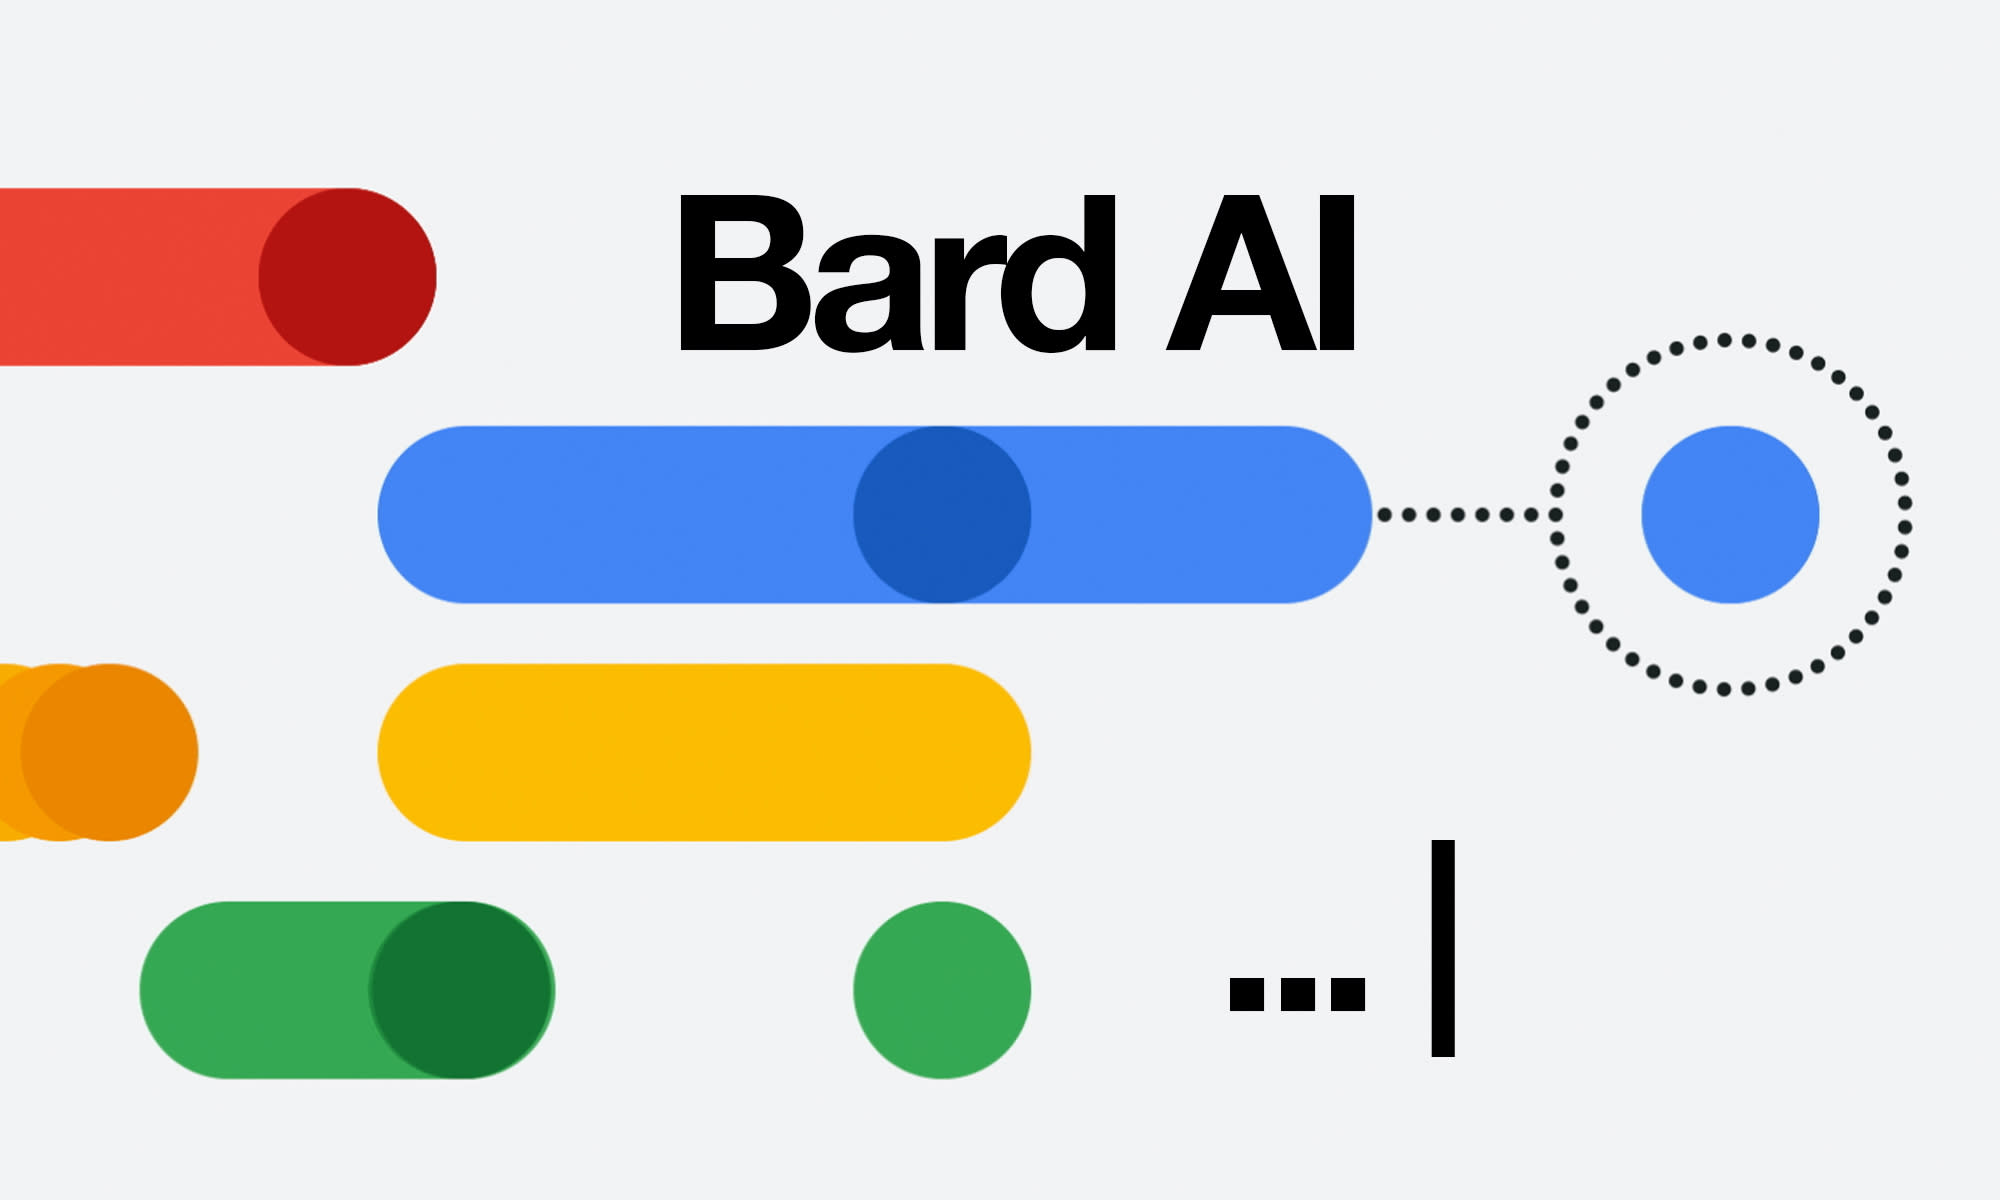 Bard de Google ya está disponible en más de 180 países